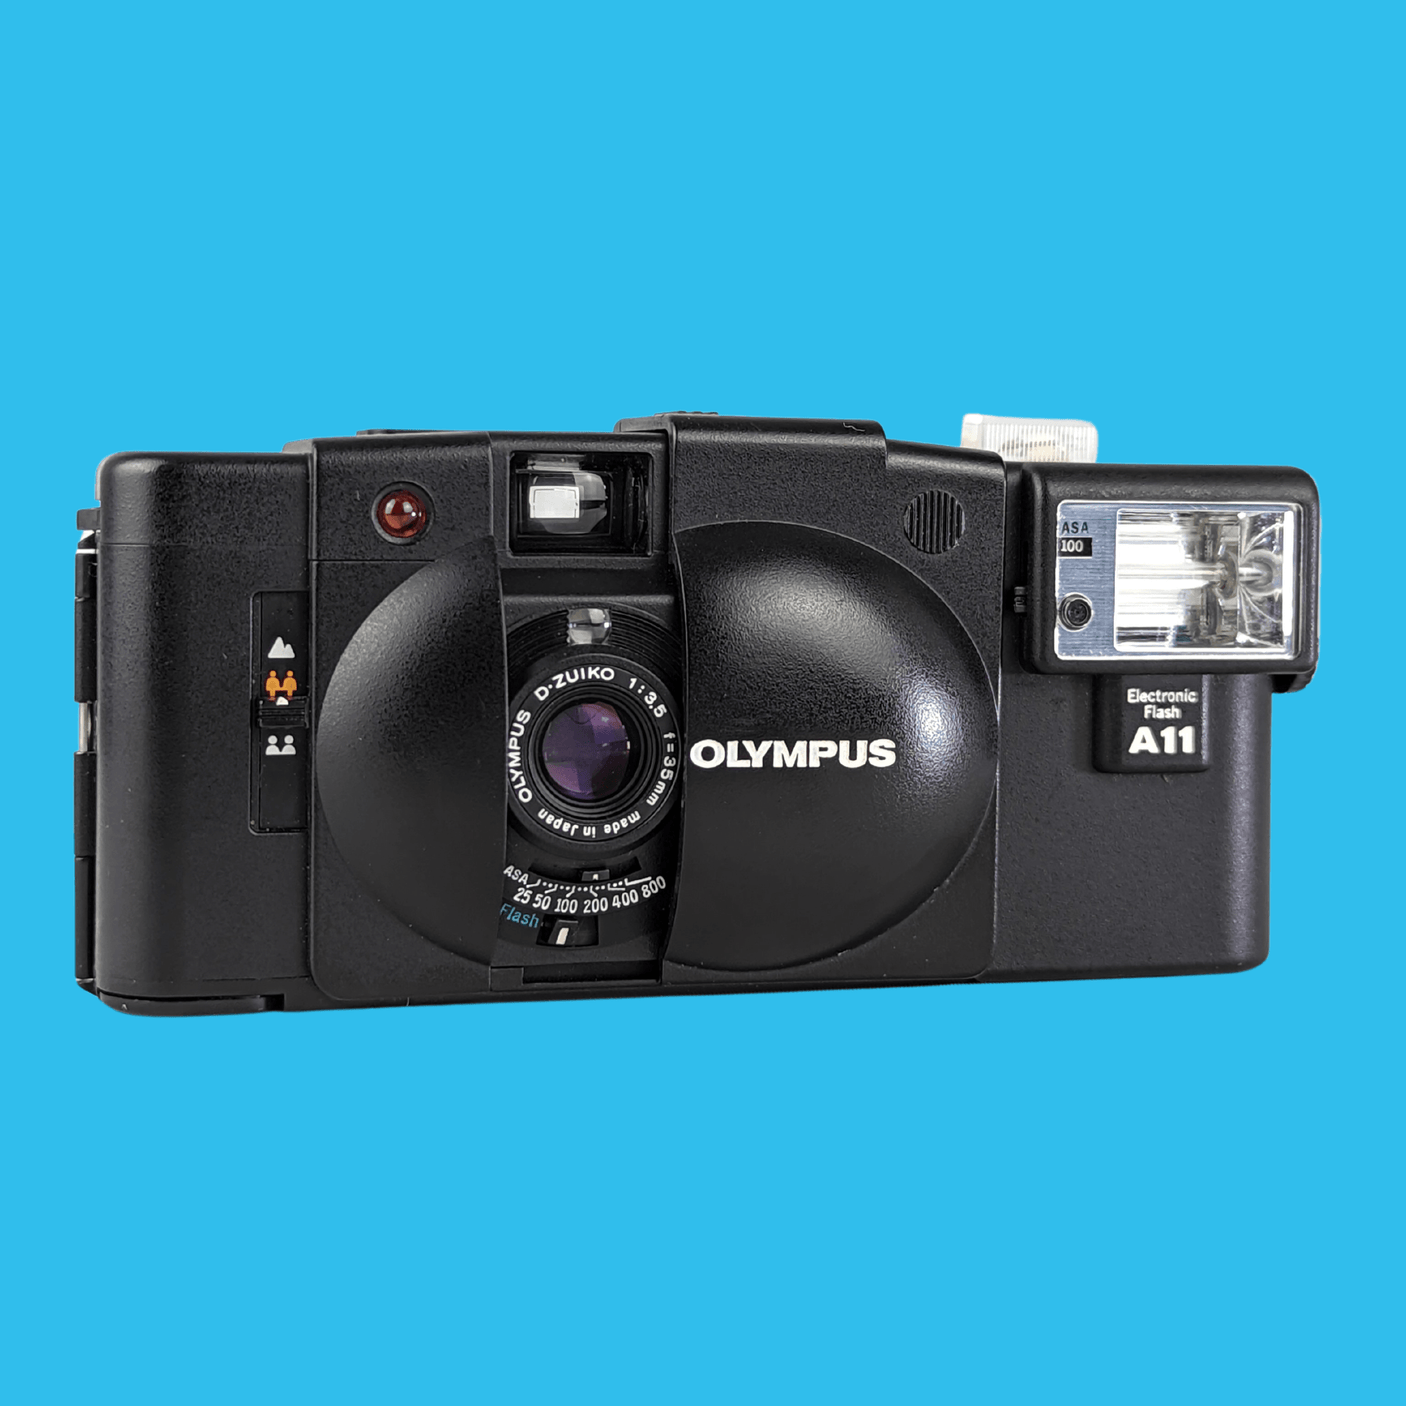 OLYMPUS オリンパスXA3 とA11 フィルム レトロカメラ - フィルムカメラ